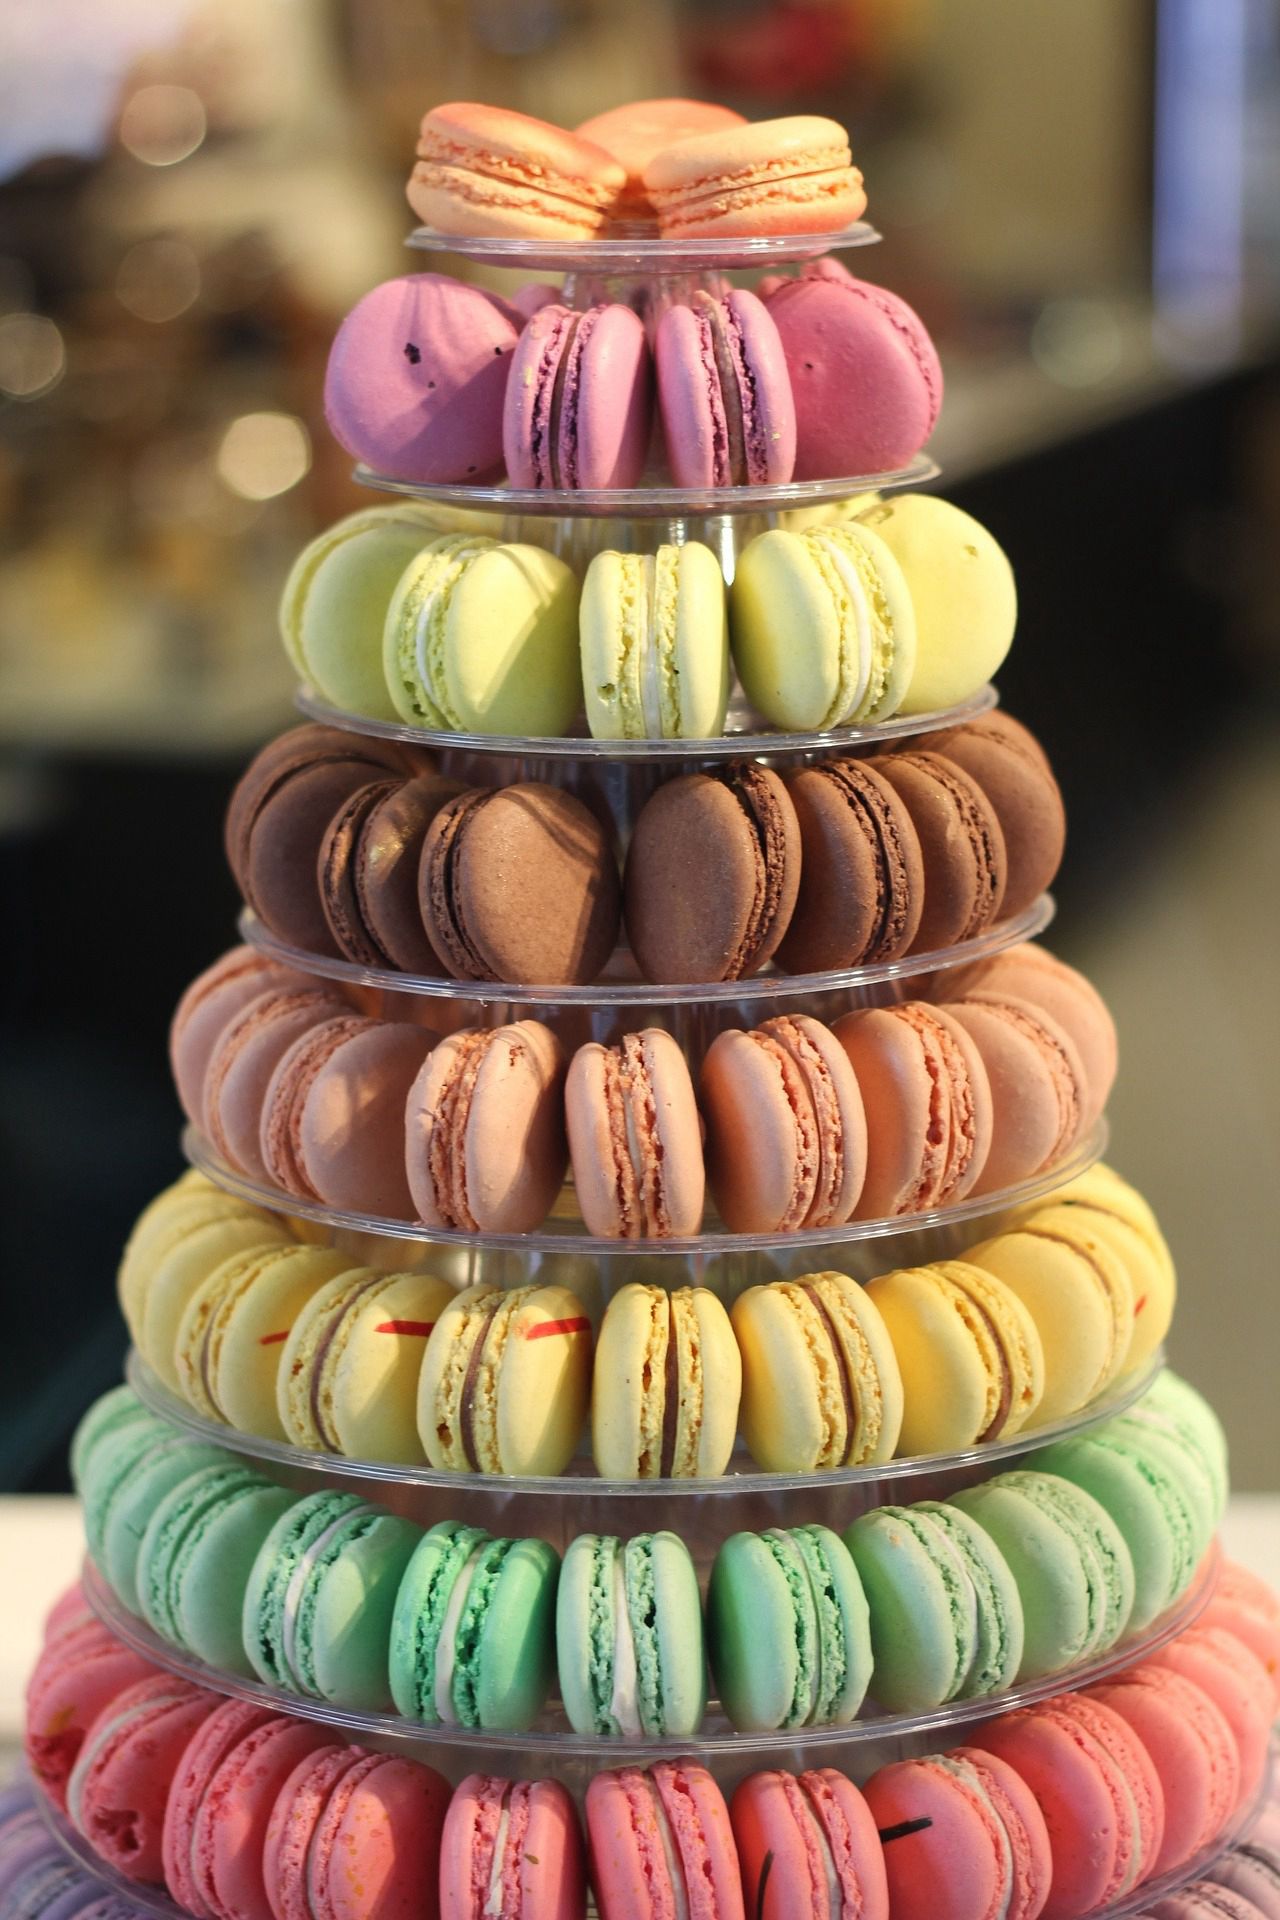 制作马卡龙甜品简单方法 马卡龙具有法国式浪漫色彩的甜点